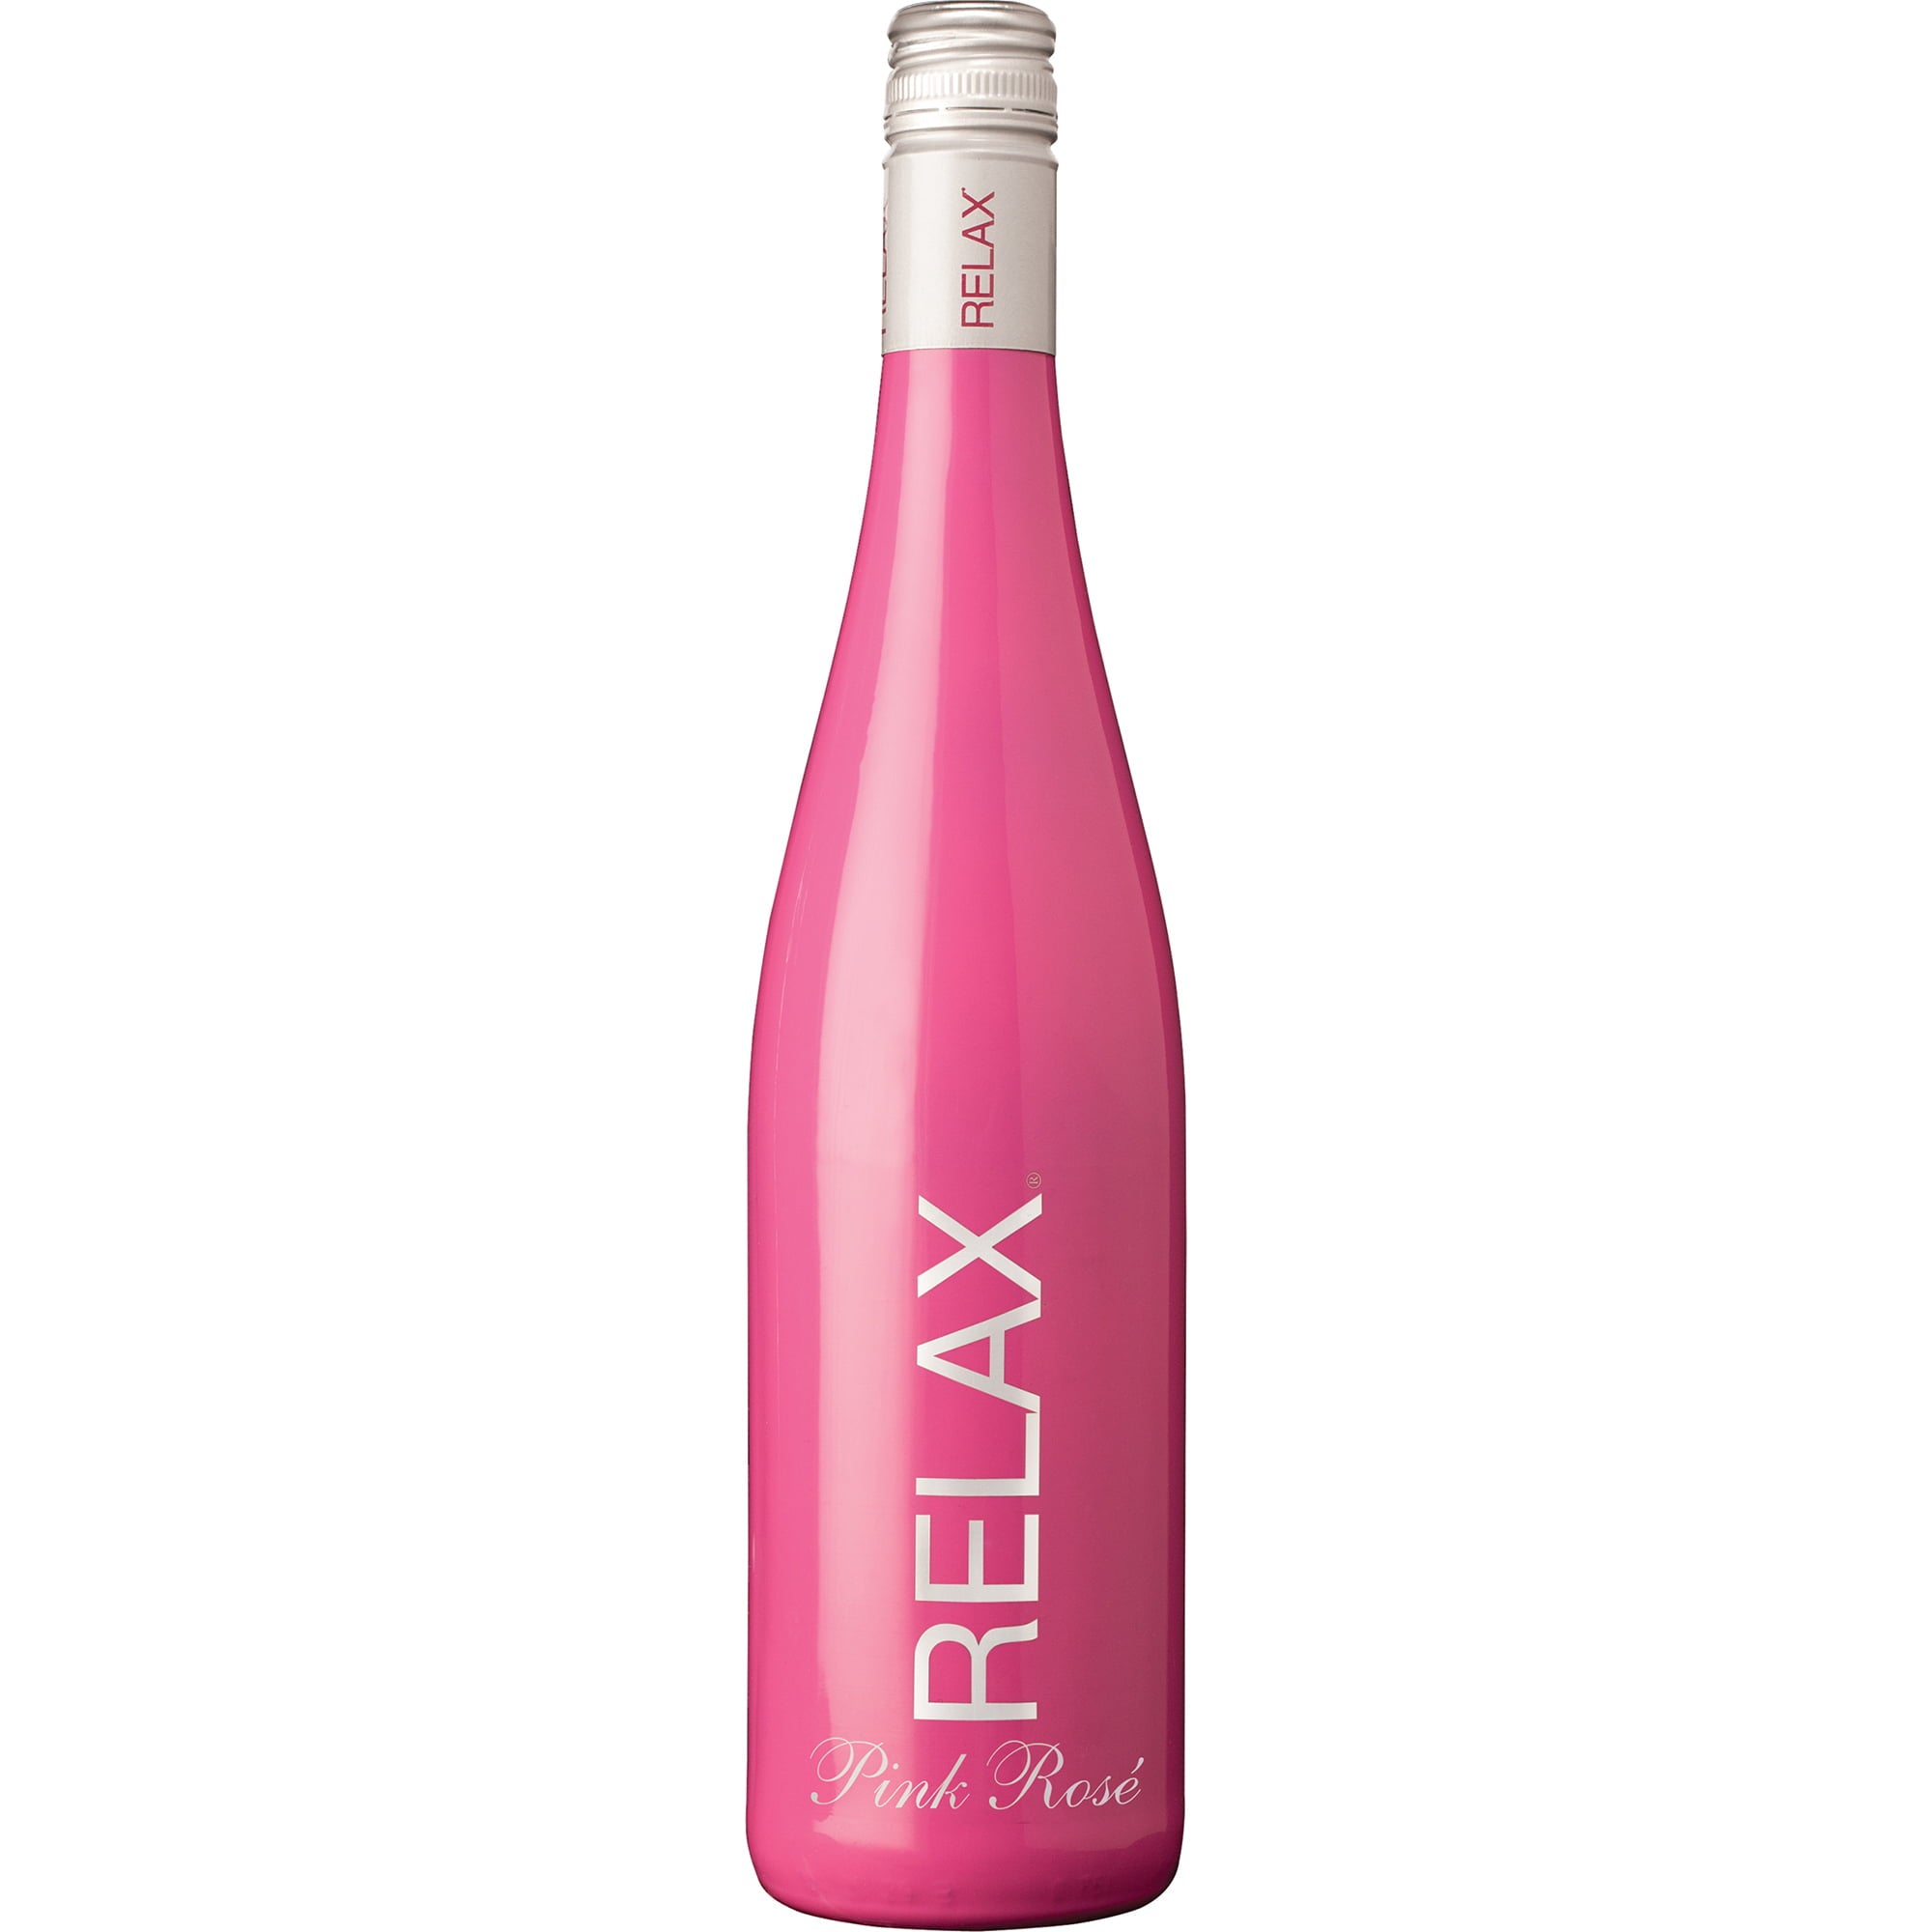 Relax Pink Spanish Rose Wine, 750 mL